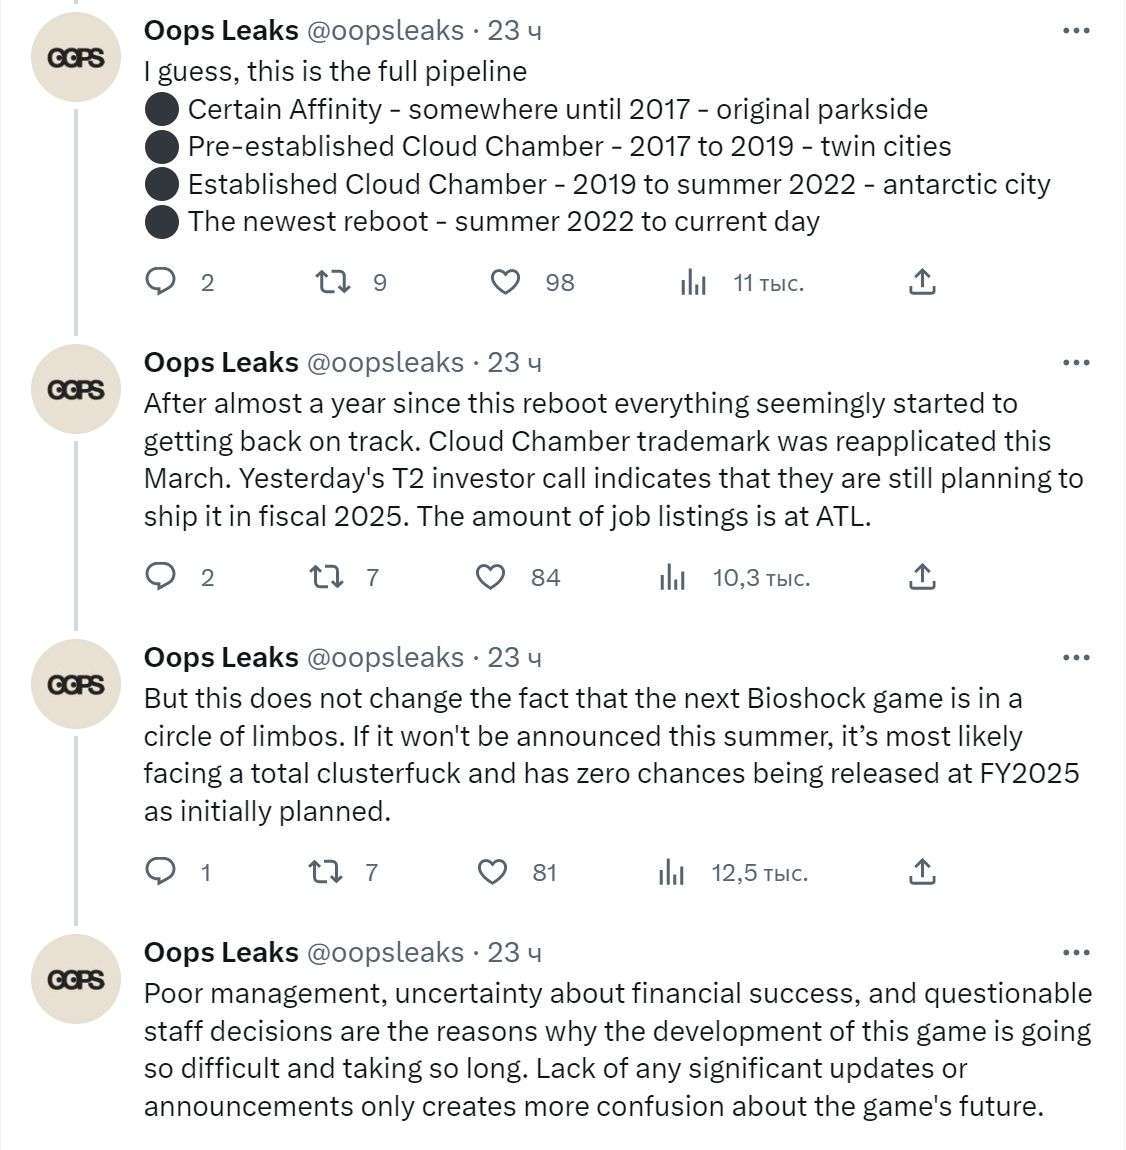 Не восторг: новая BioShock попала в производственный ад — главную проблему не могут решить уже четвёртый год